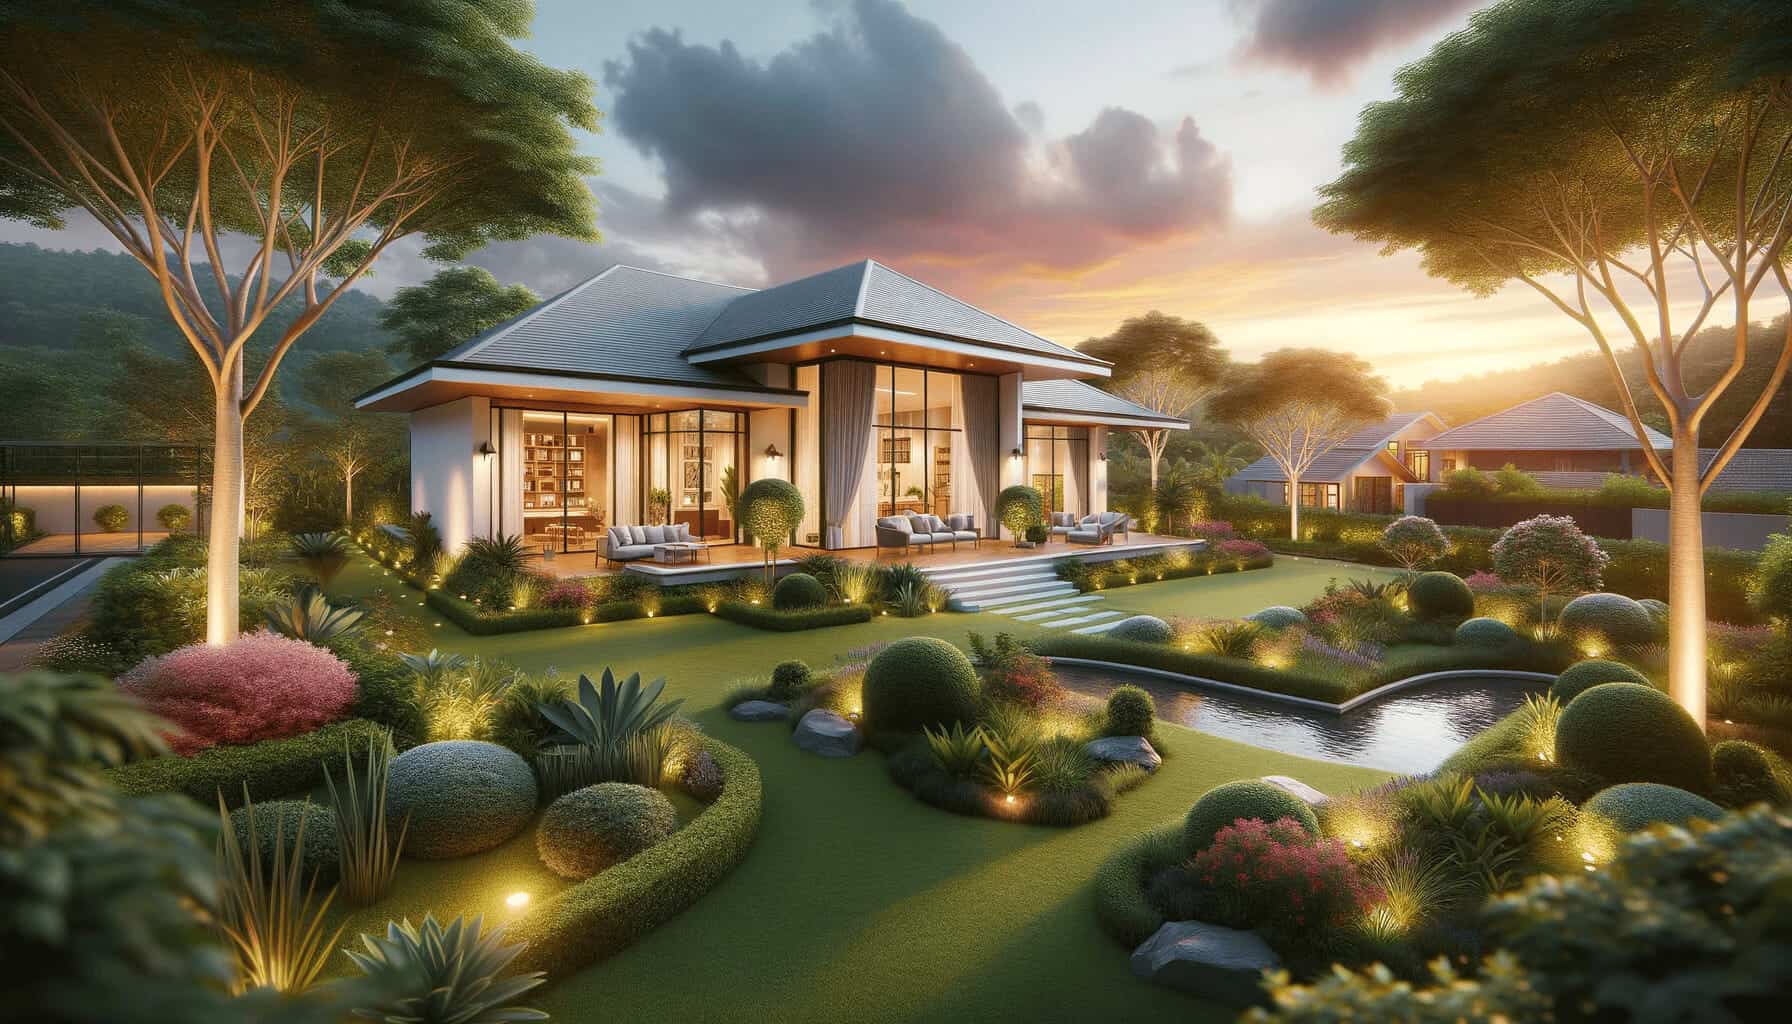 Construya una casa IBS: soluciones rápidas, económicas y de calidad para sus sueños | Kontraktor Bina Rumah Atas Tanah Sendiri